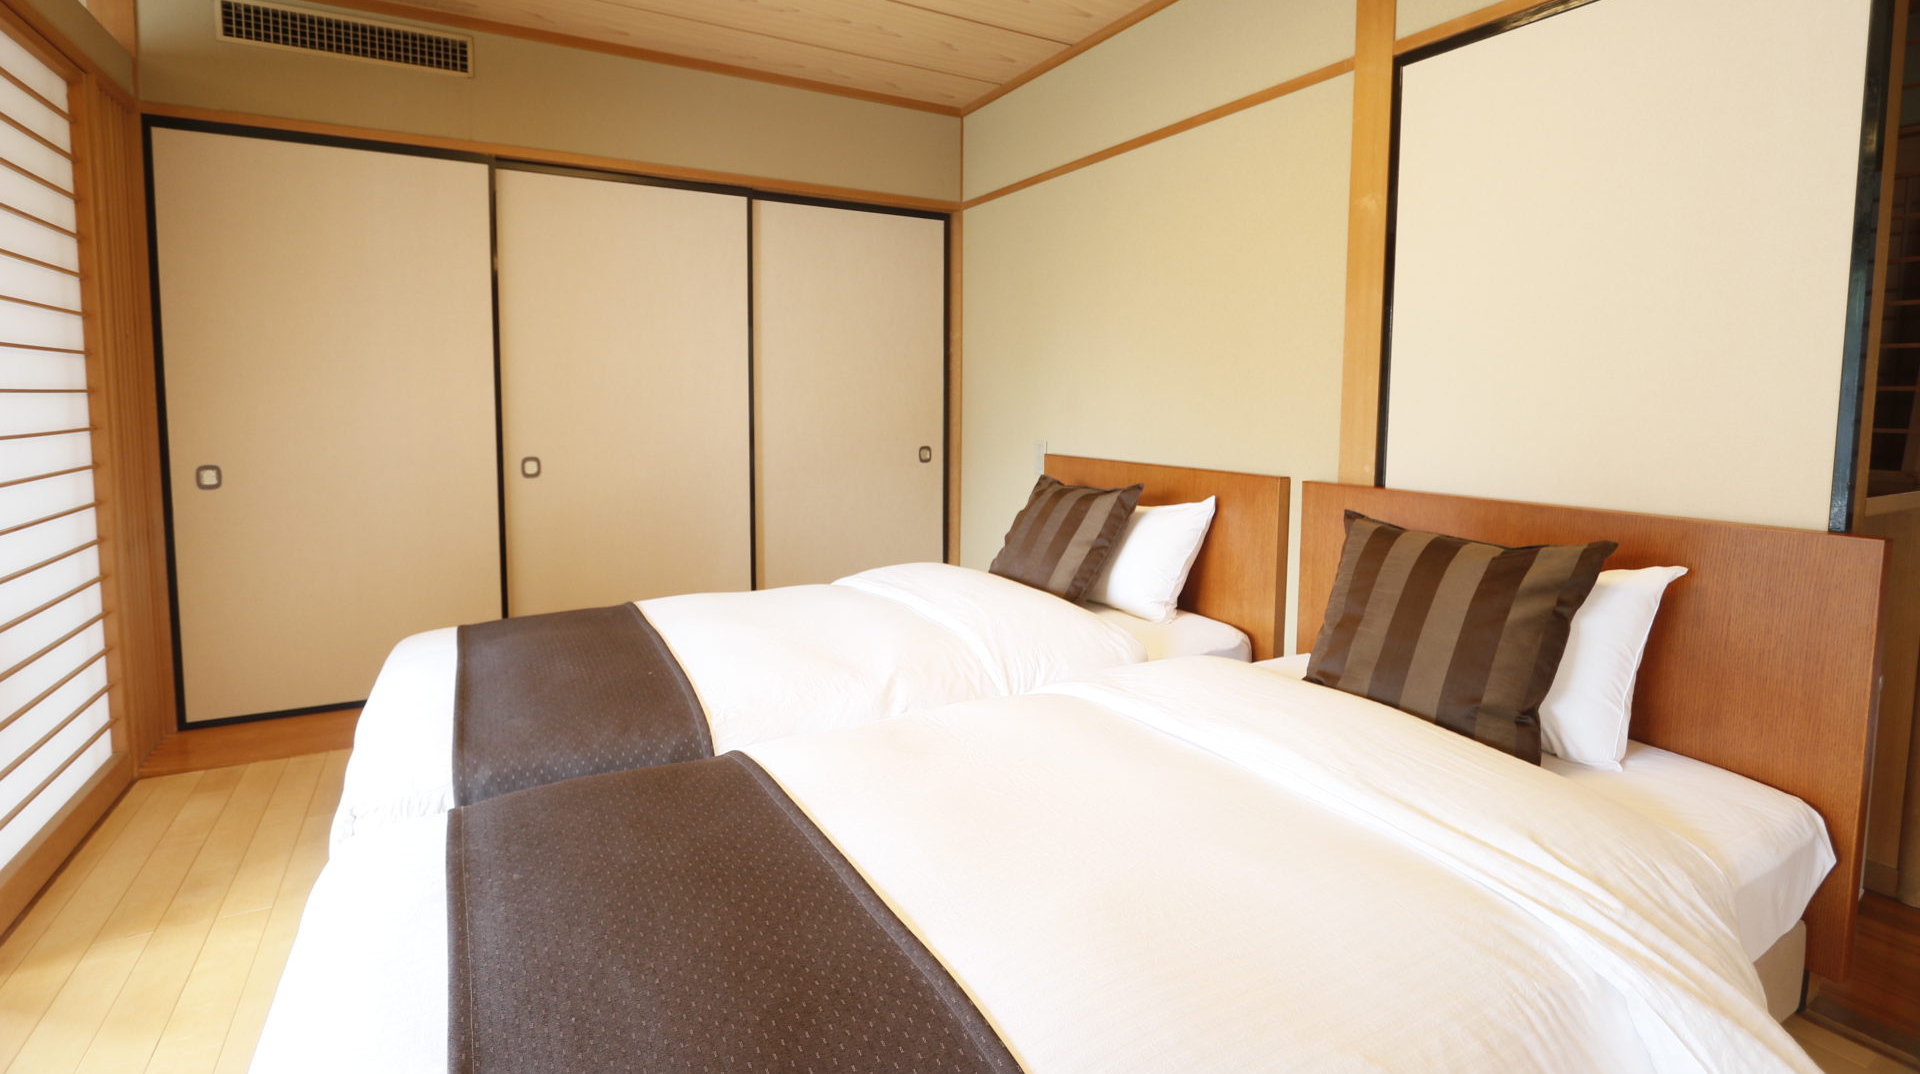 【和モダンツイン+和室】畳敷きの純和風なお部屋にゆとりのある大きさのツインベッドを配置しております